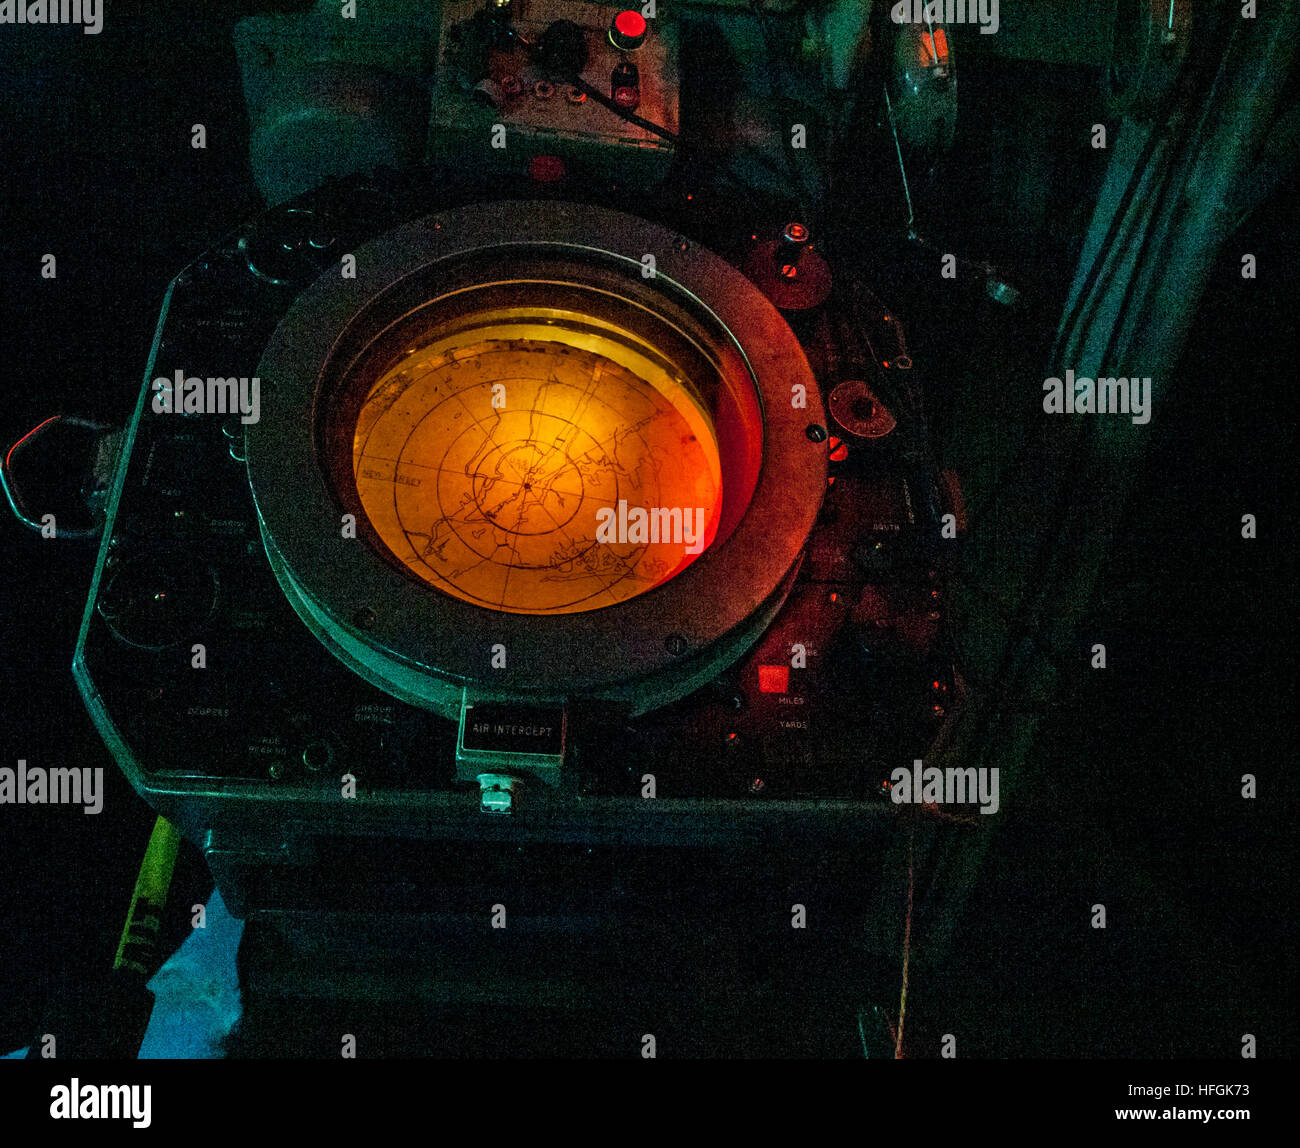 Radar Screen in Orange Light Stock Photo